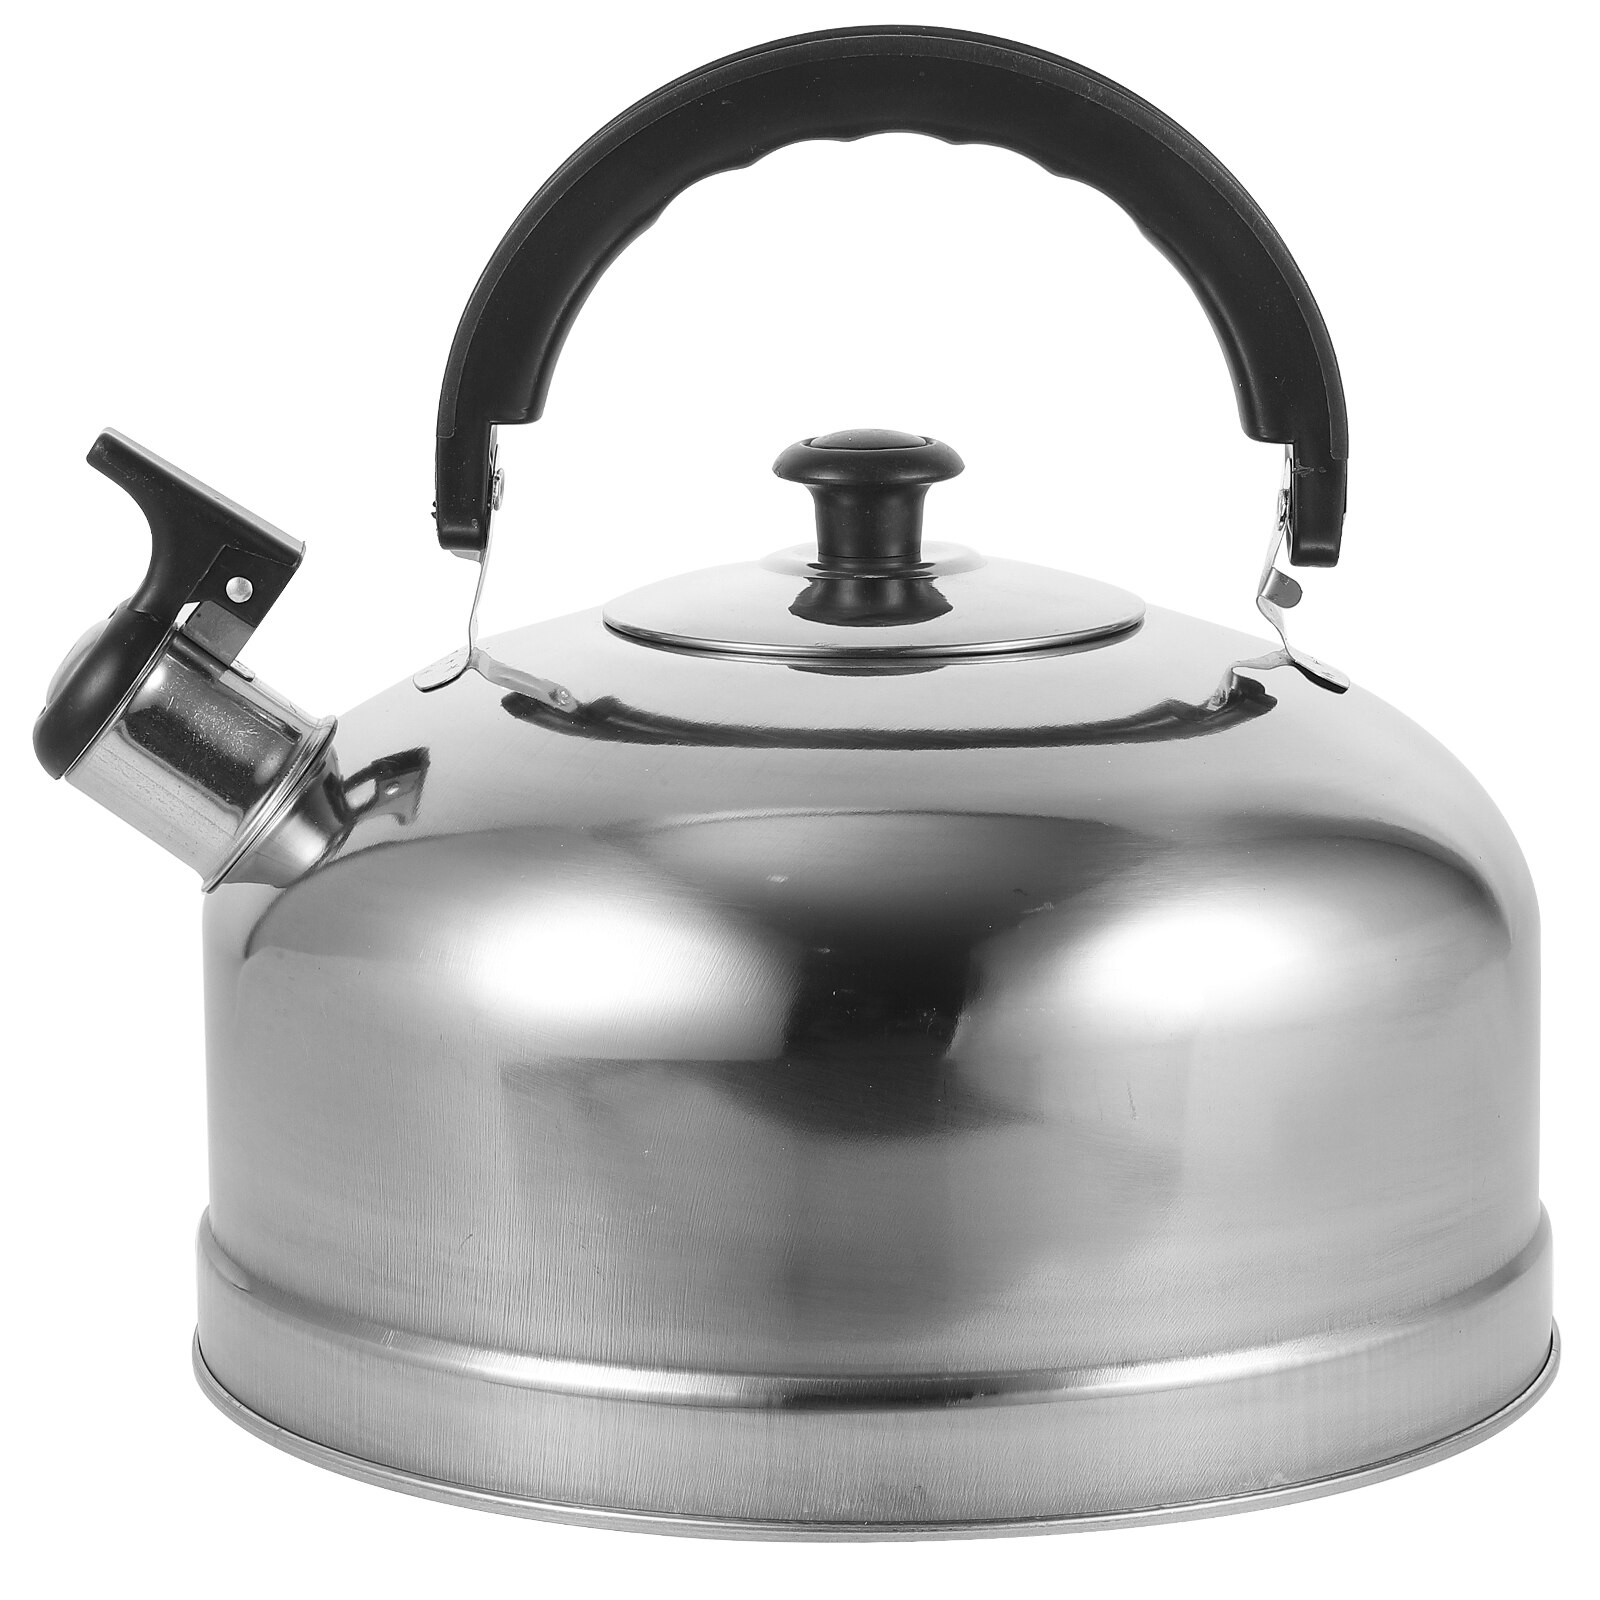 Teapot Whistling Coffee Pot Gas Stove Teakettle Me...